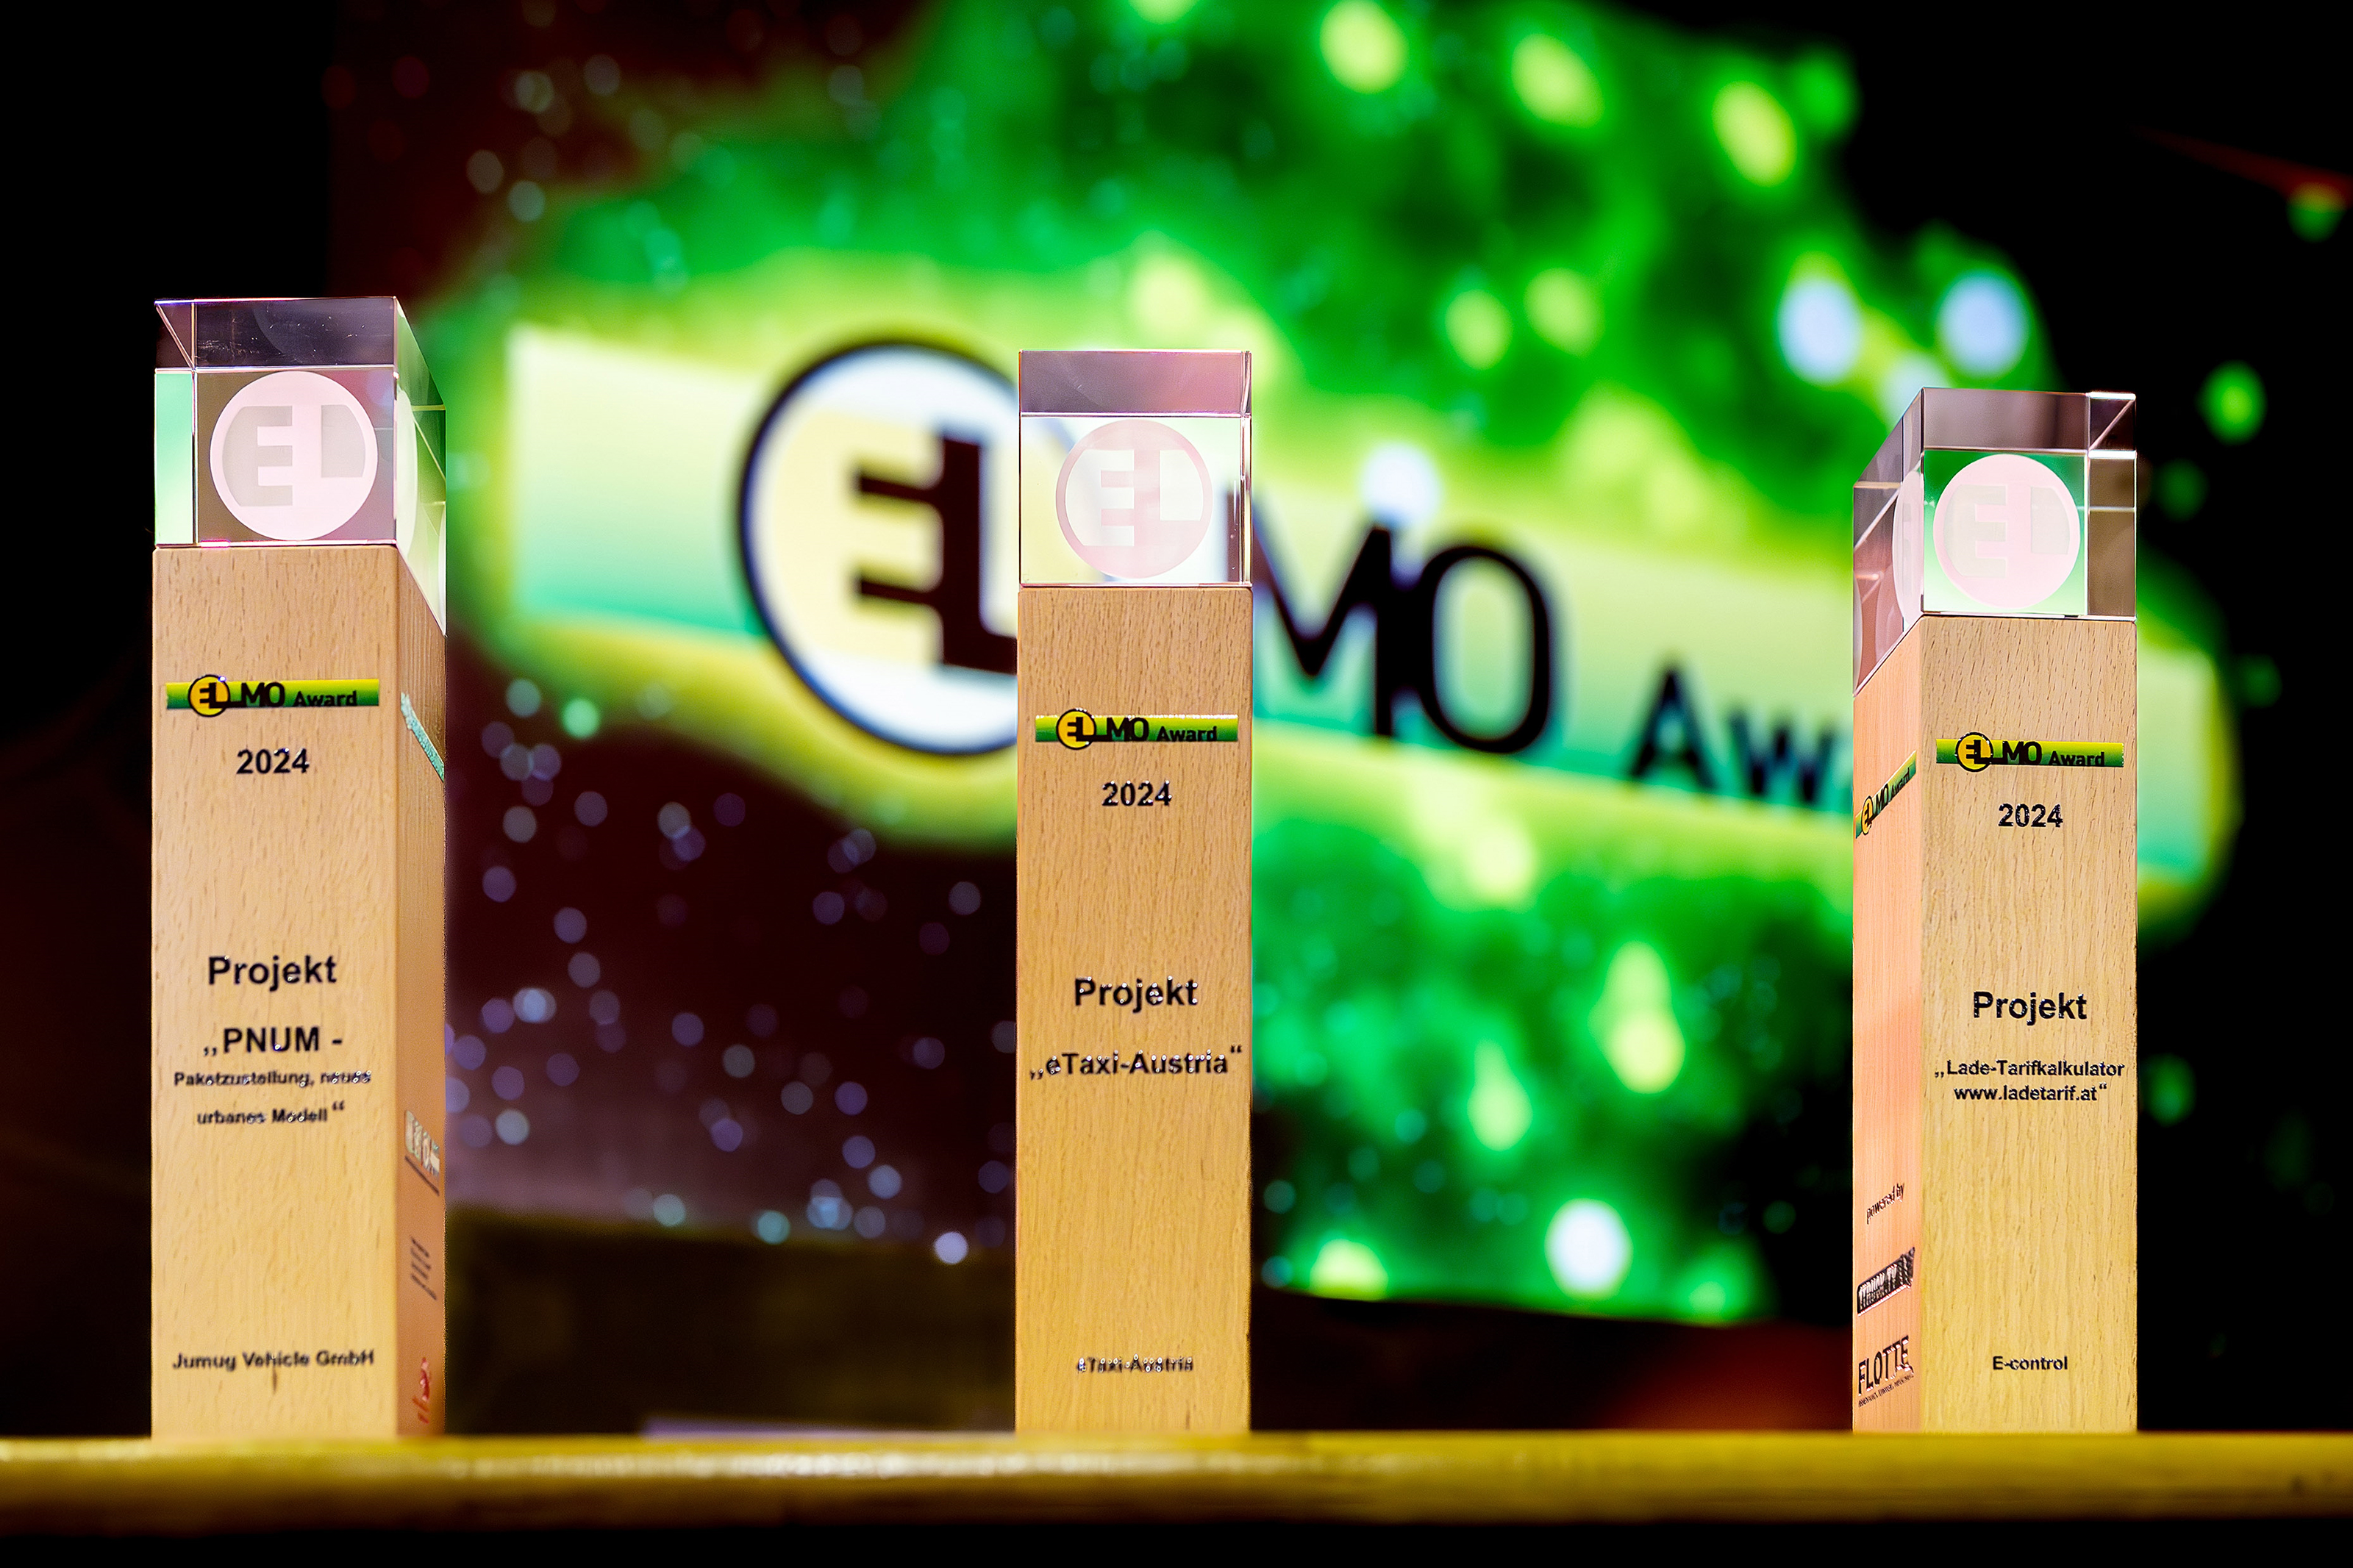 Drei ELMO-Awards nebeneinander stehend: Säulen aus Holz mit gläserner Spitze und der Aufschrift Elmo-Award 2024 Projekt, im Hintergrund das Elmo-Logo auf grünem Licht